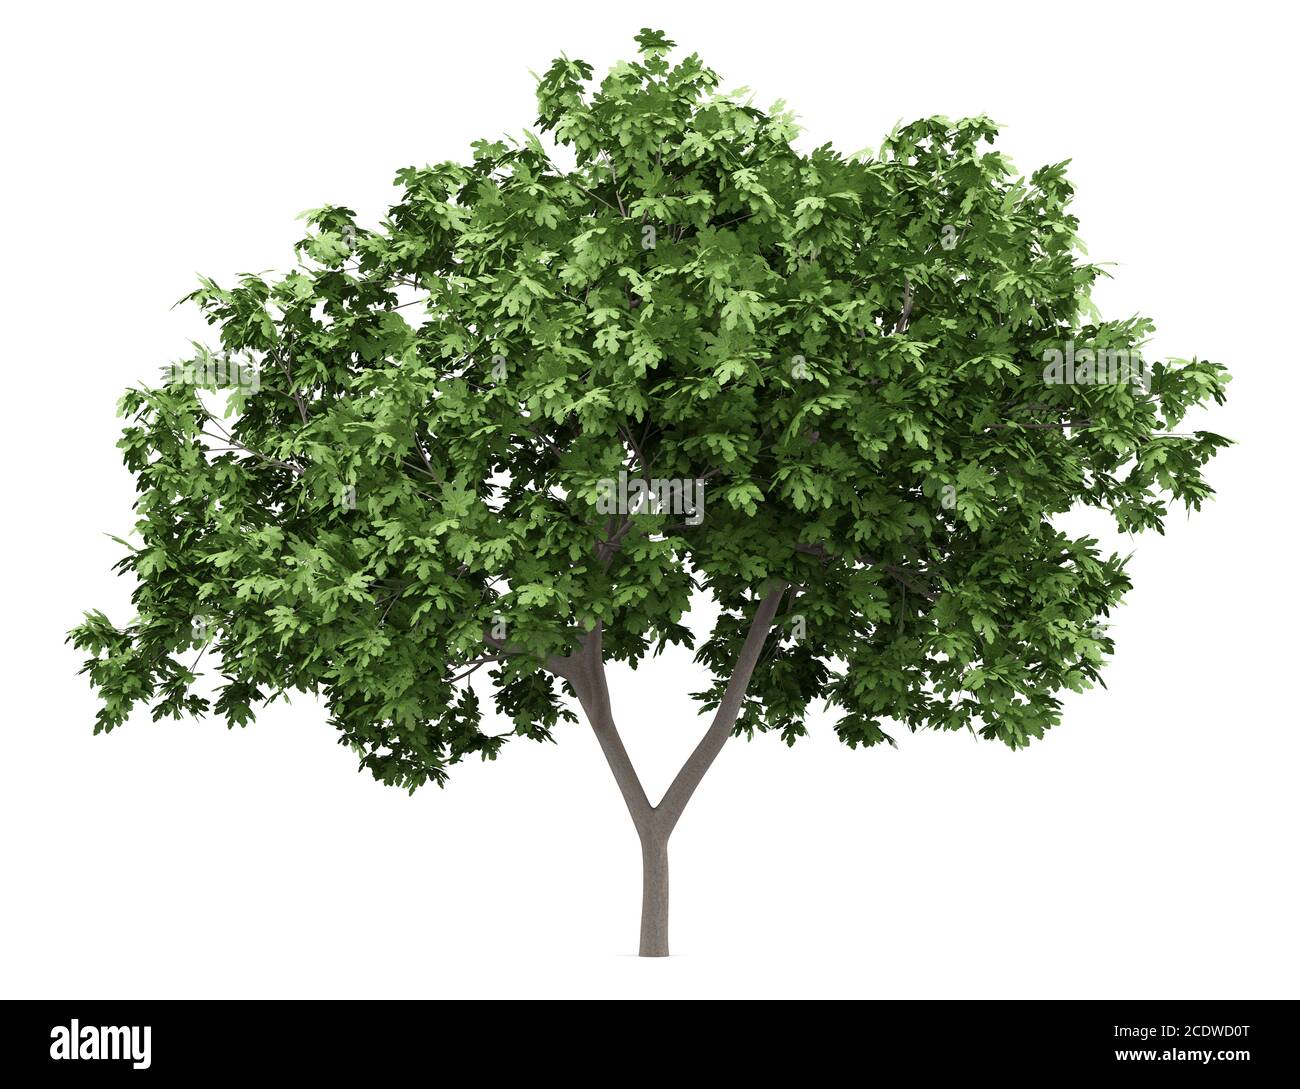 arbre de figues commun isolé sur fond blanc Banque D'Images